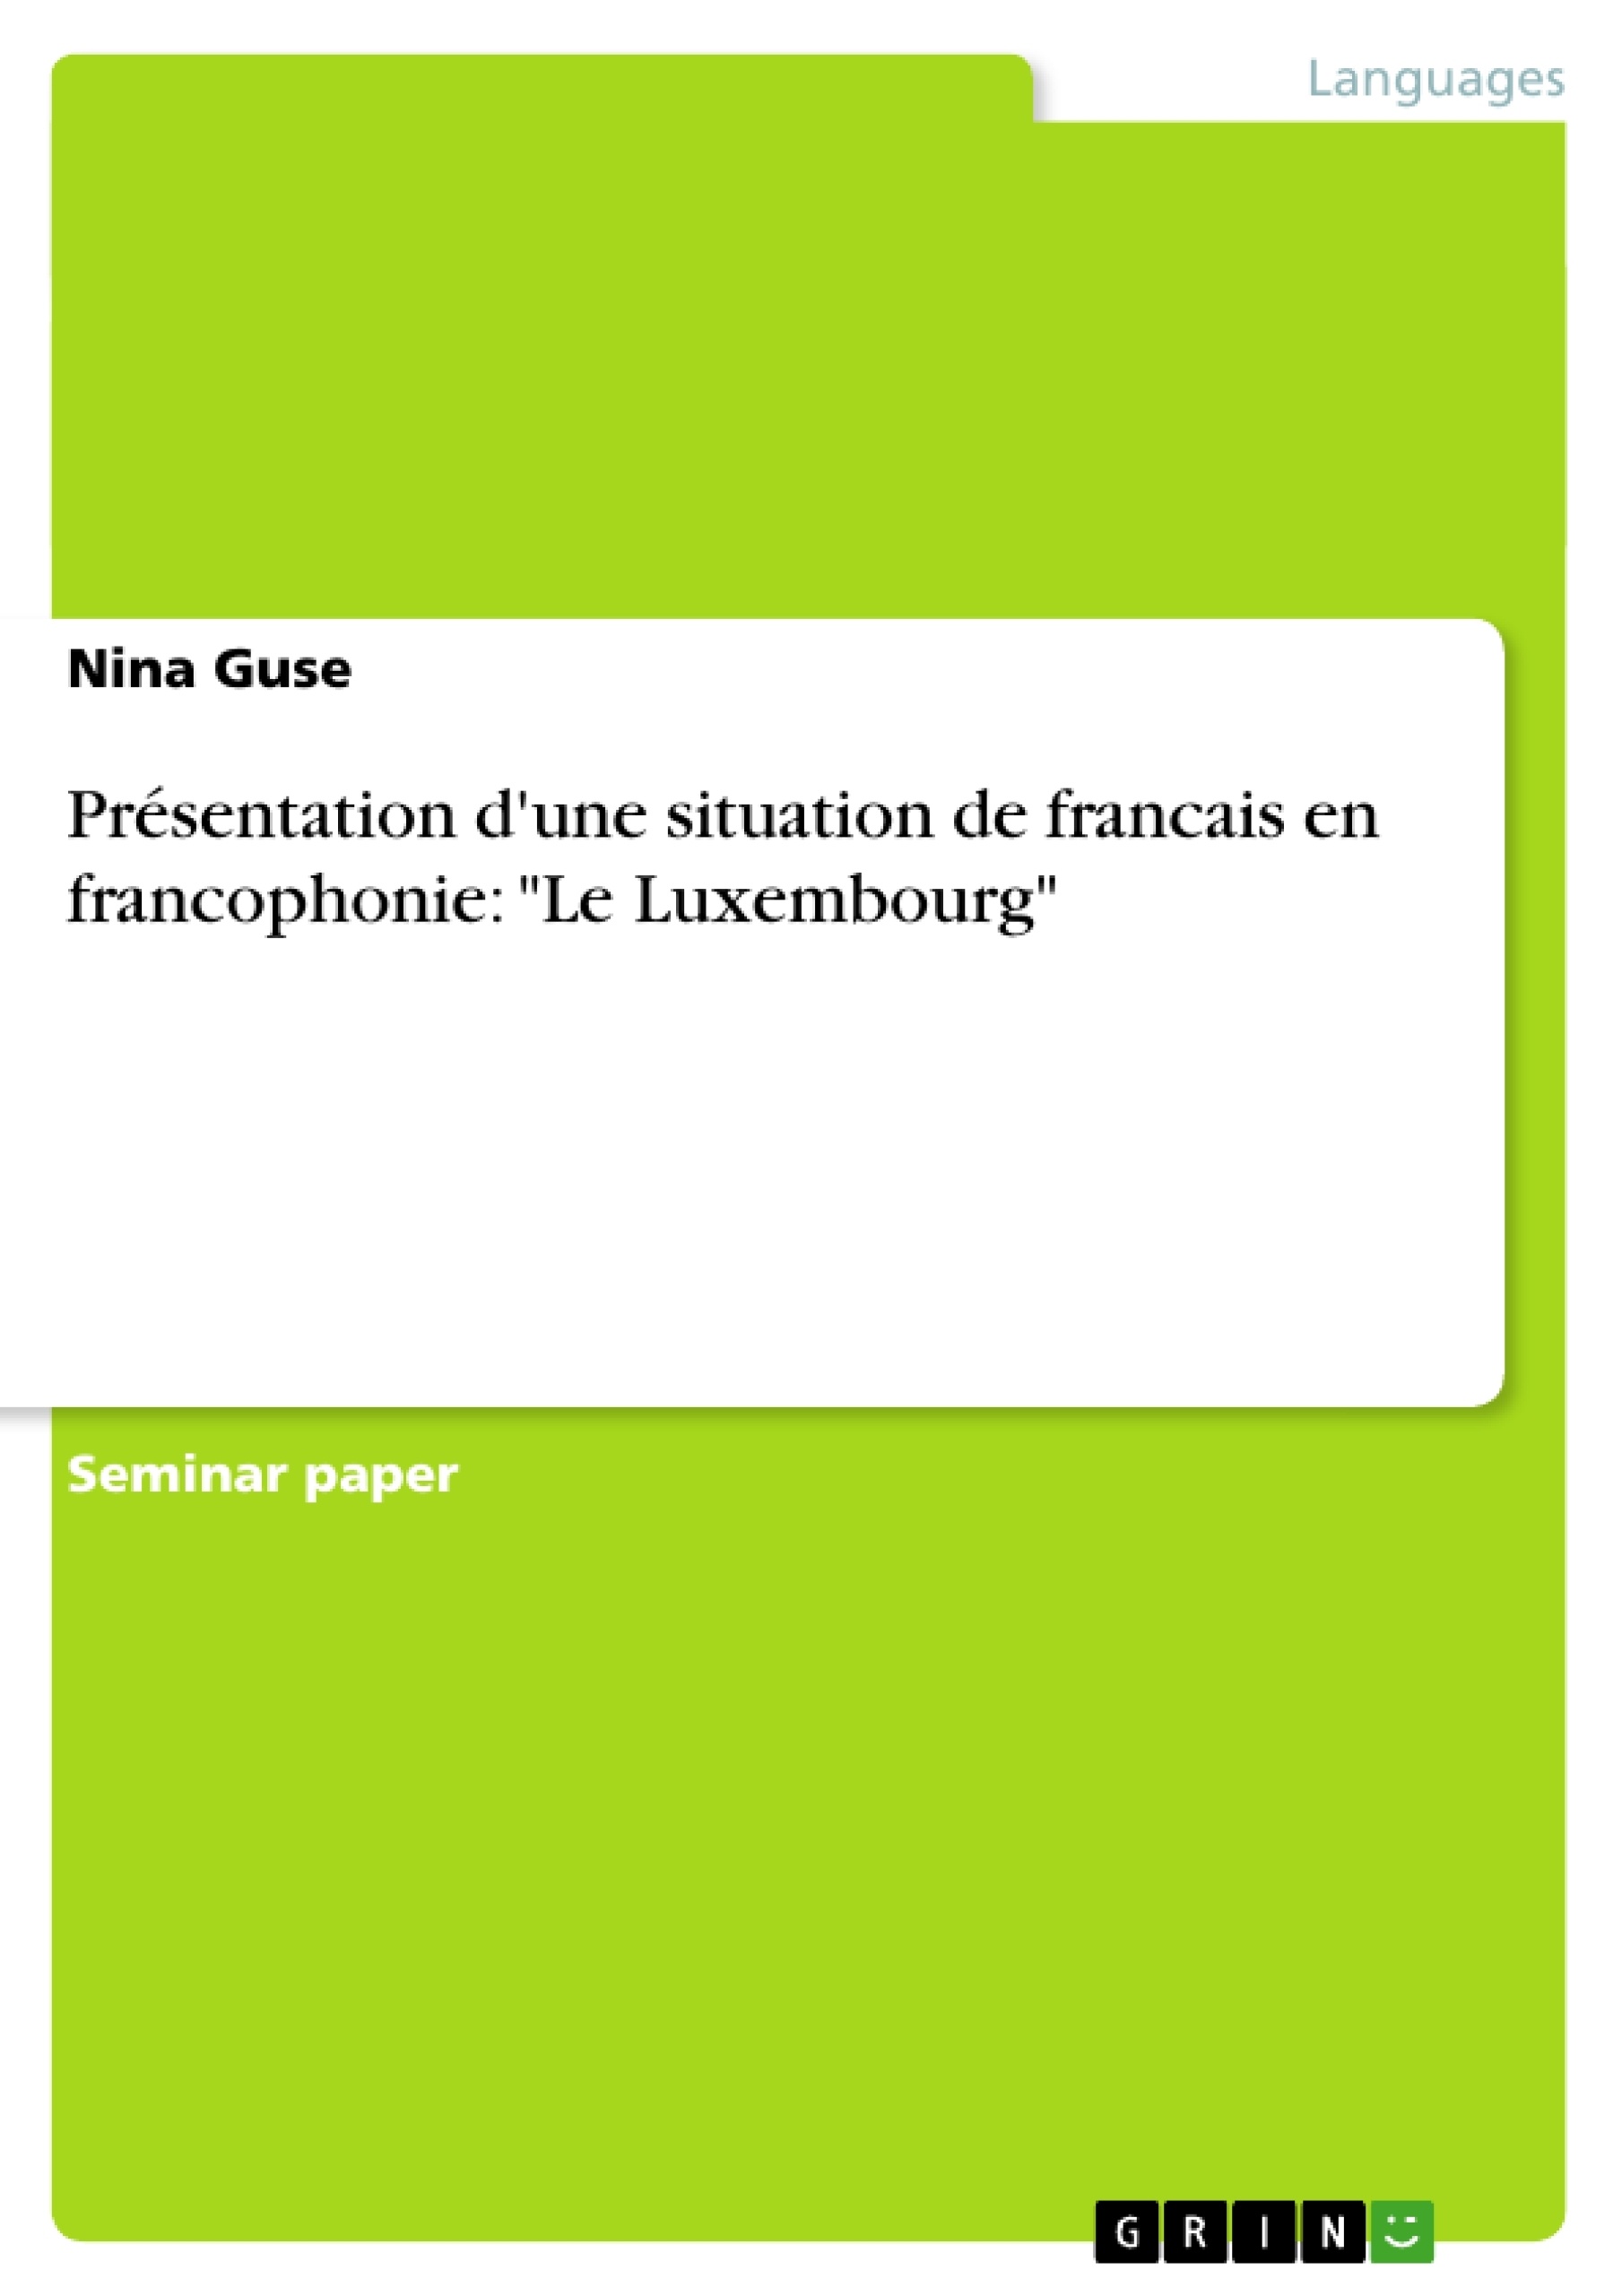 Título: Présentation d'une situation de francais en francophonie: "Le Luxembourg"